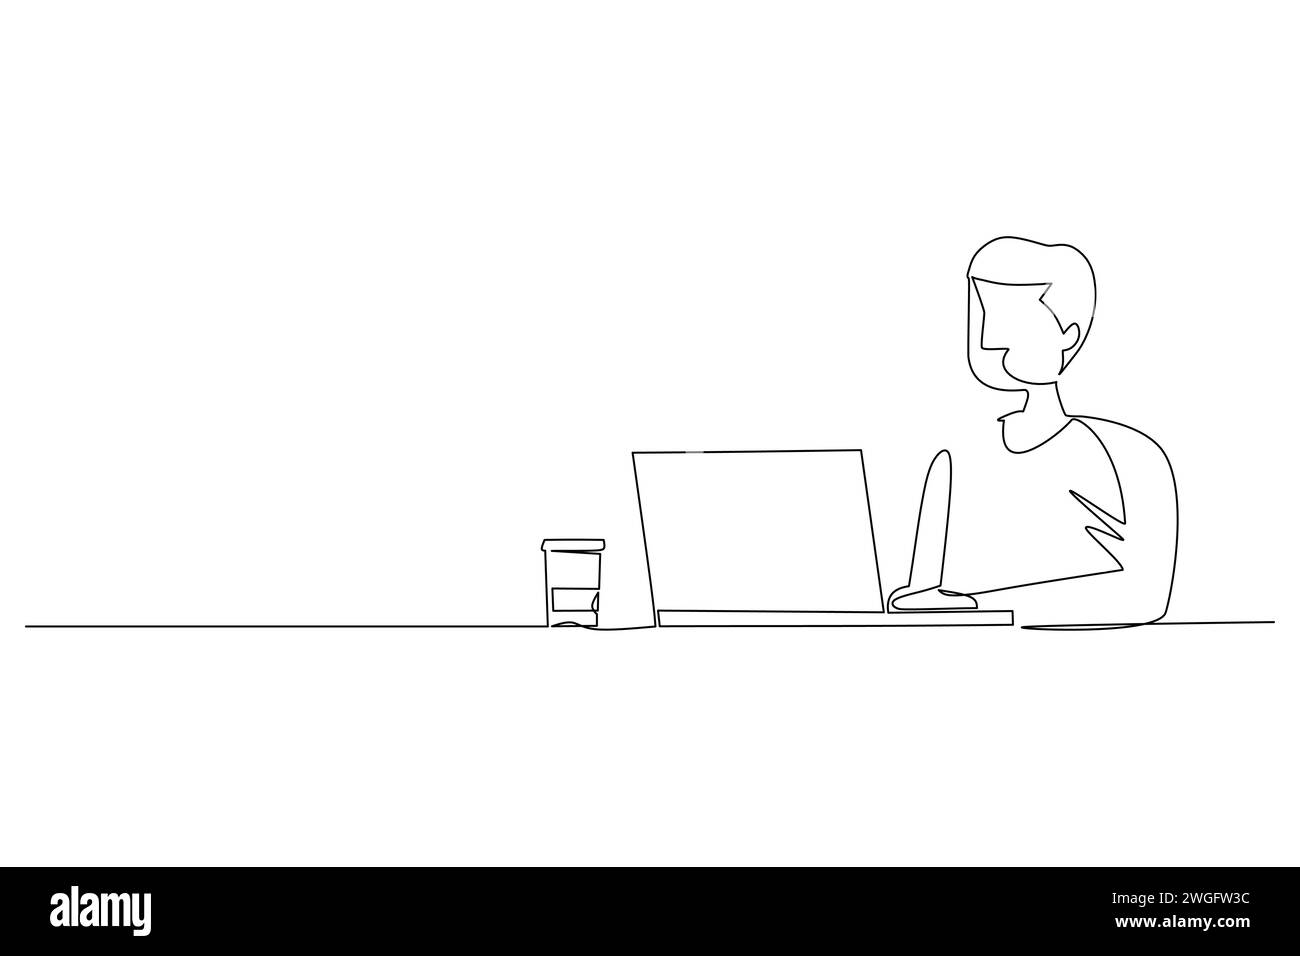 Die fortlaufende Linienzeichnung eines jungen Geschäftsmannes sitzt vor einem Laptop und einer Tasse Kaffee. Mitarbeiter denken nachdenklich vor dem Laptop-Monitor. Stock Vektor